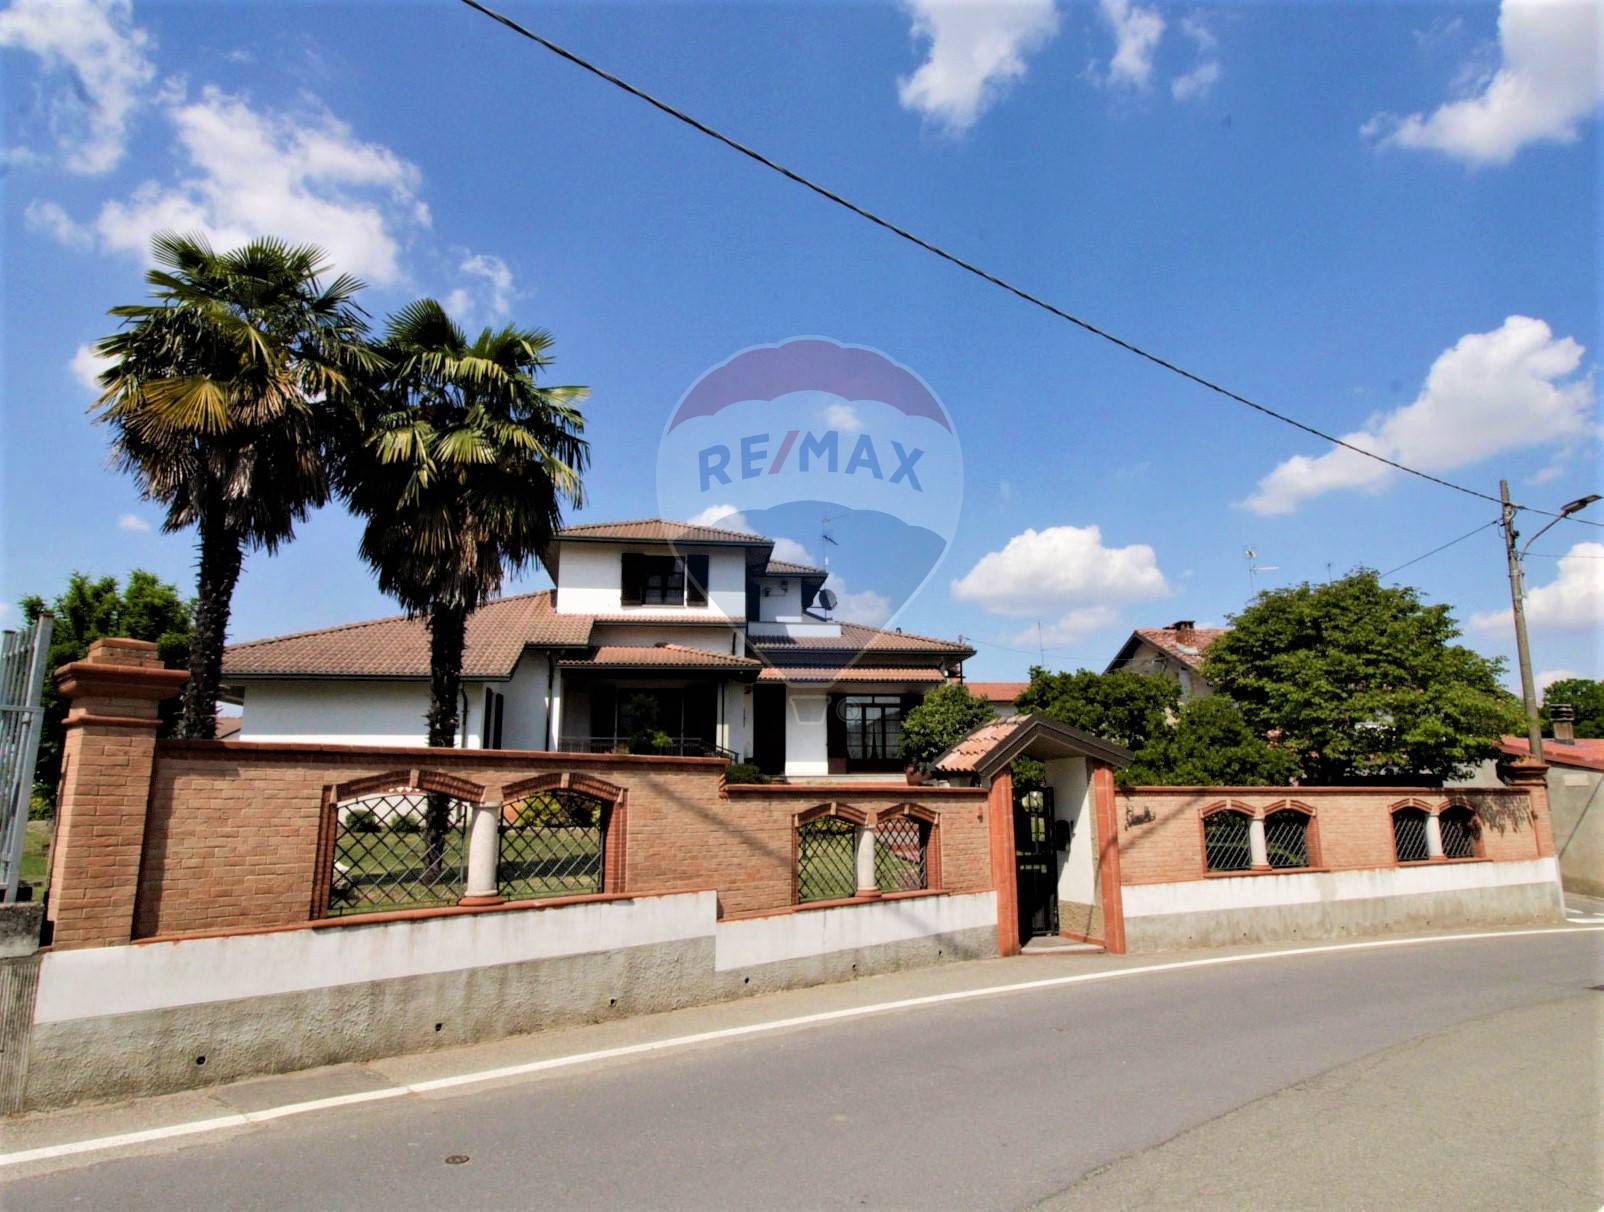 Villa Bifamiliare in vendita a Ceretto Lomellina, 7 locali, prezzo € 270.000 | PortaleAgenzieImmobiliari.it